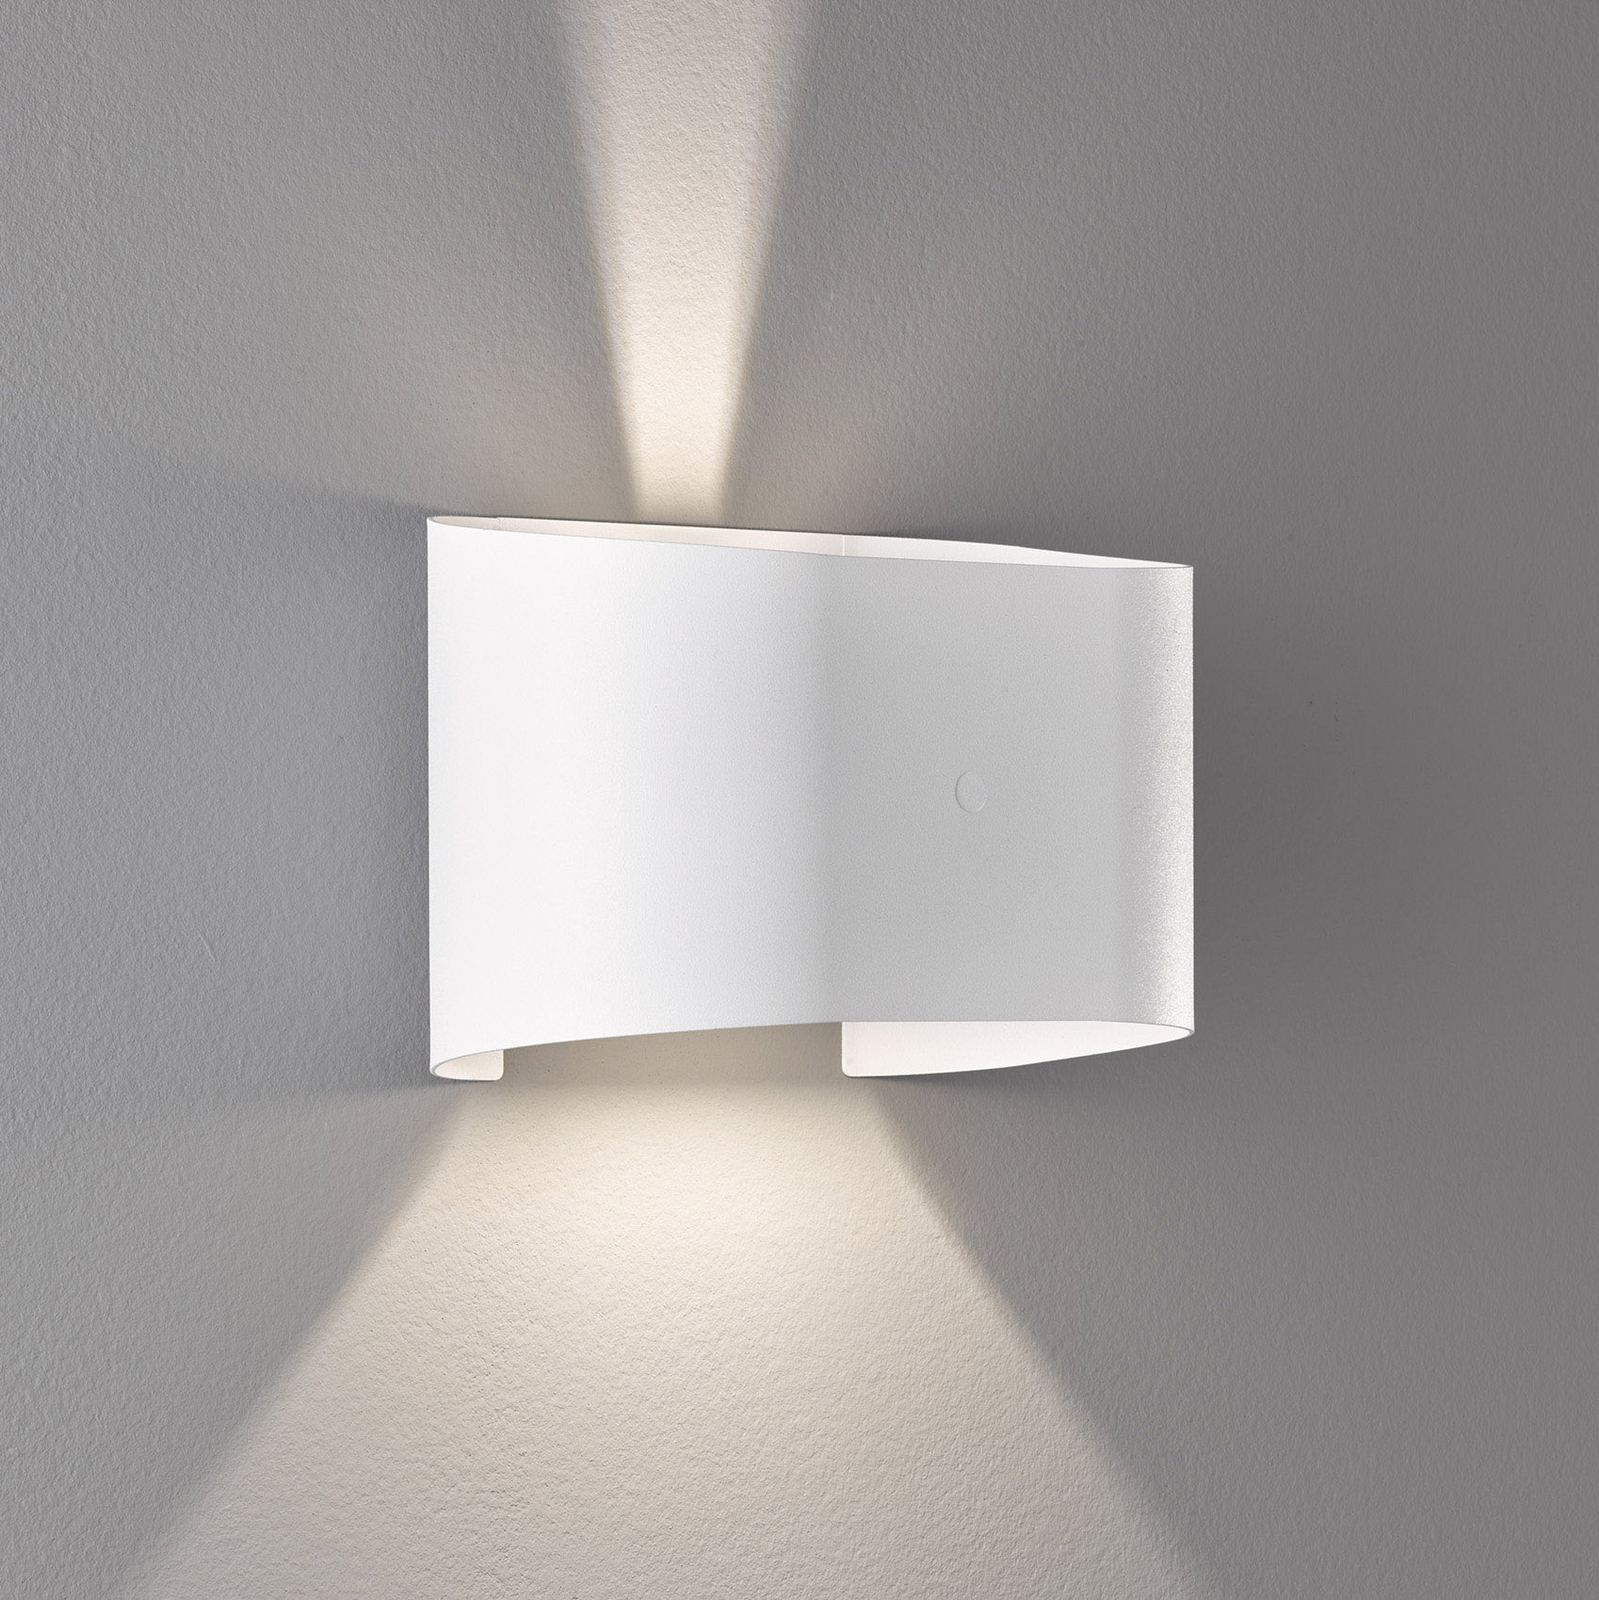 LED-Wandleuchte Wall, zweiflammig, rund, weiß